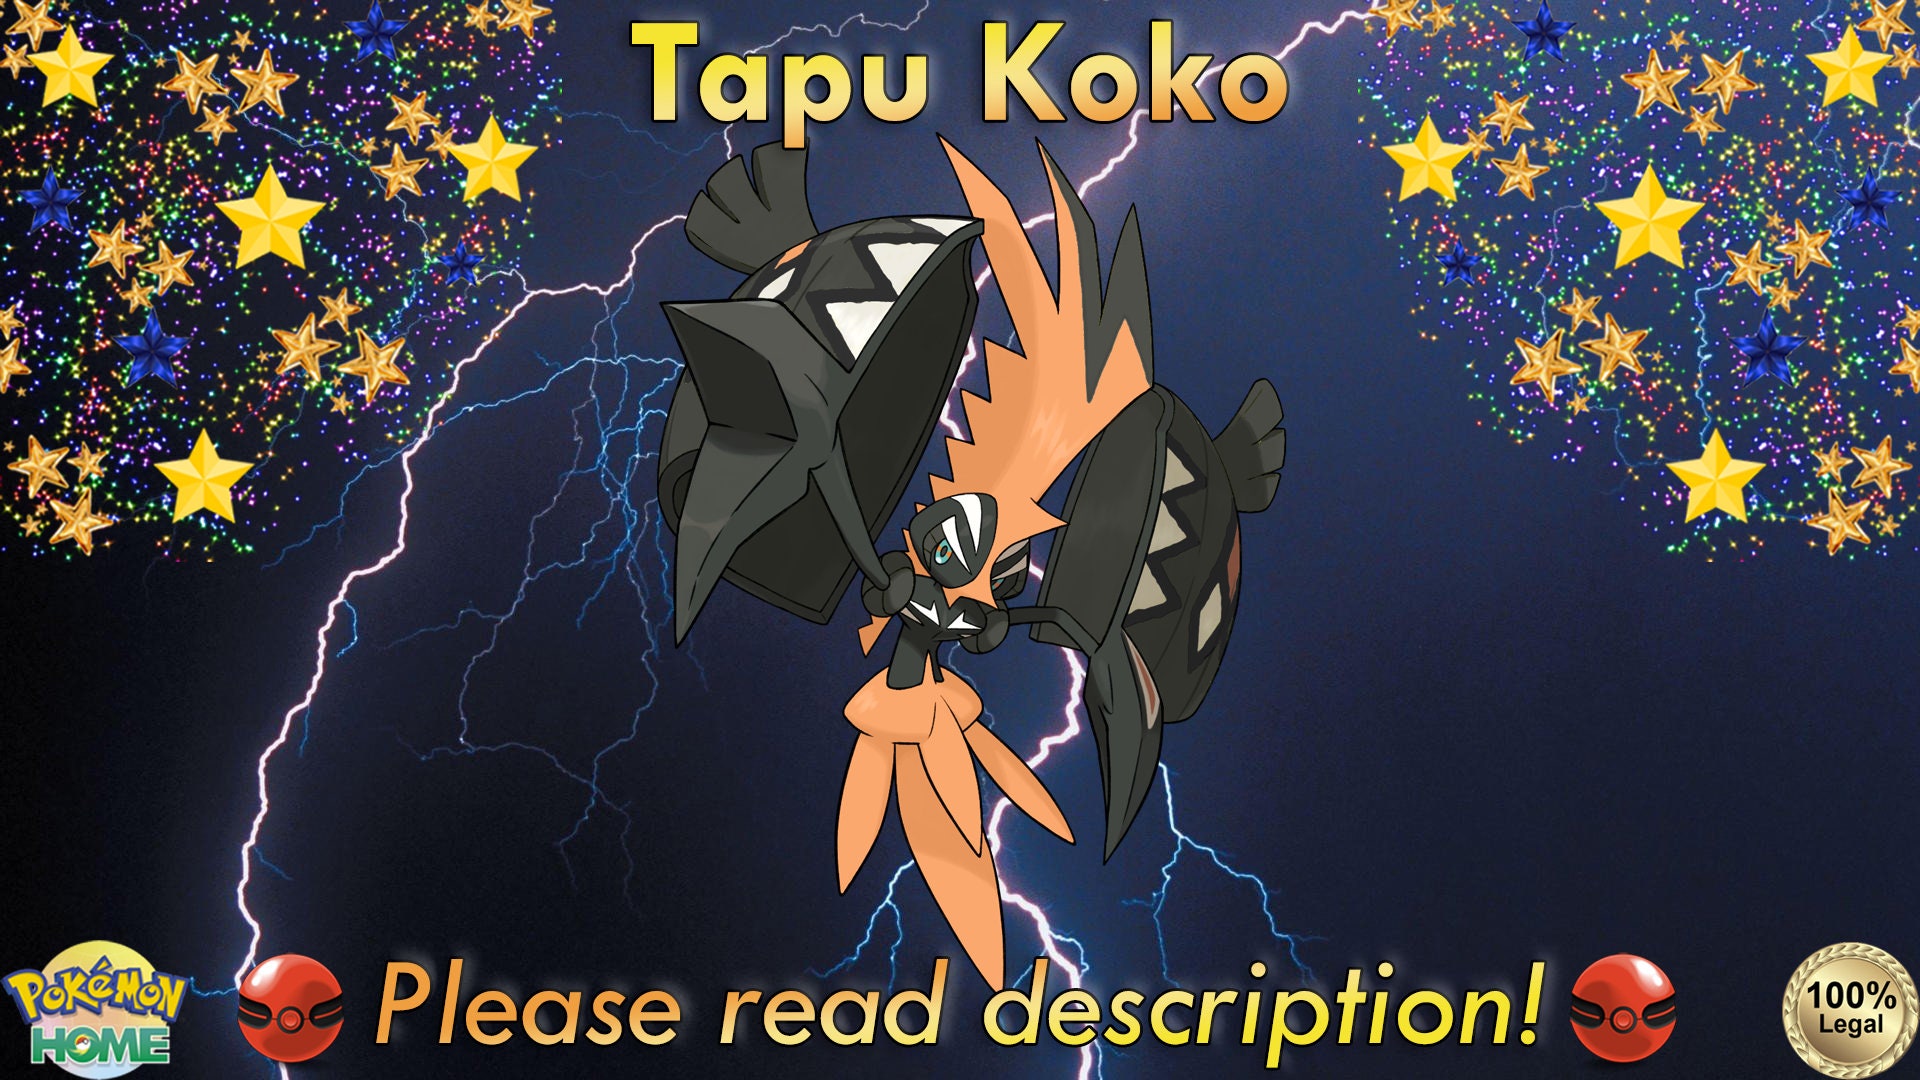 Tapu Koko ◇, União de Aliados, Banco de Dados de Cards do Estampas  Ilustradas